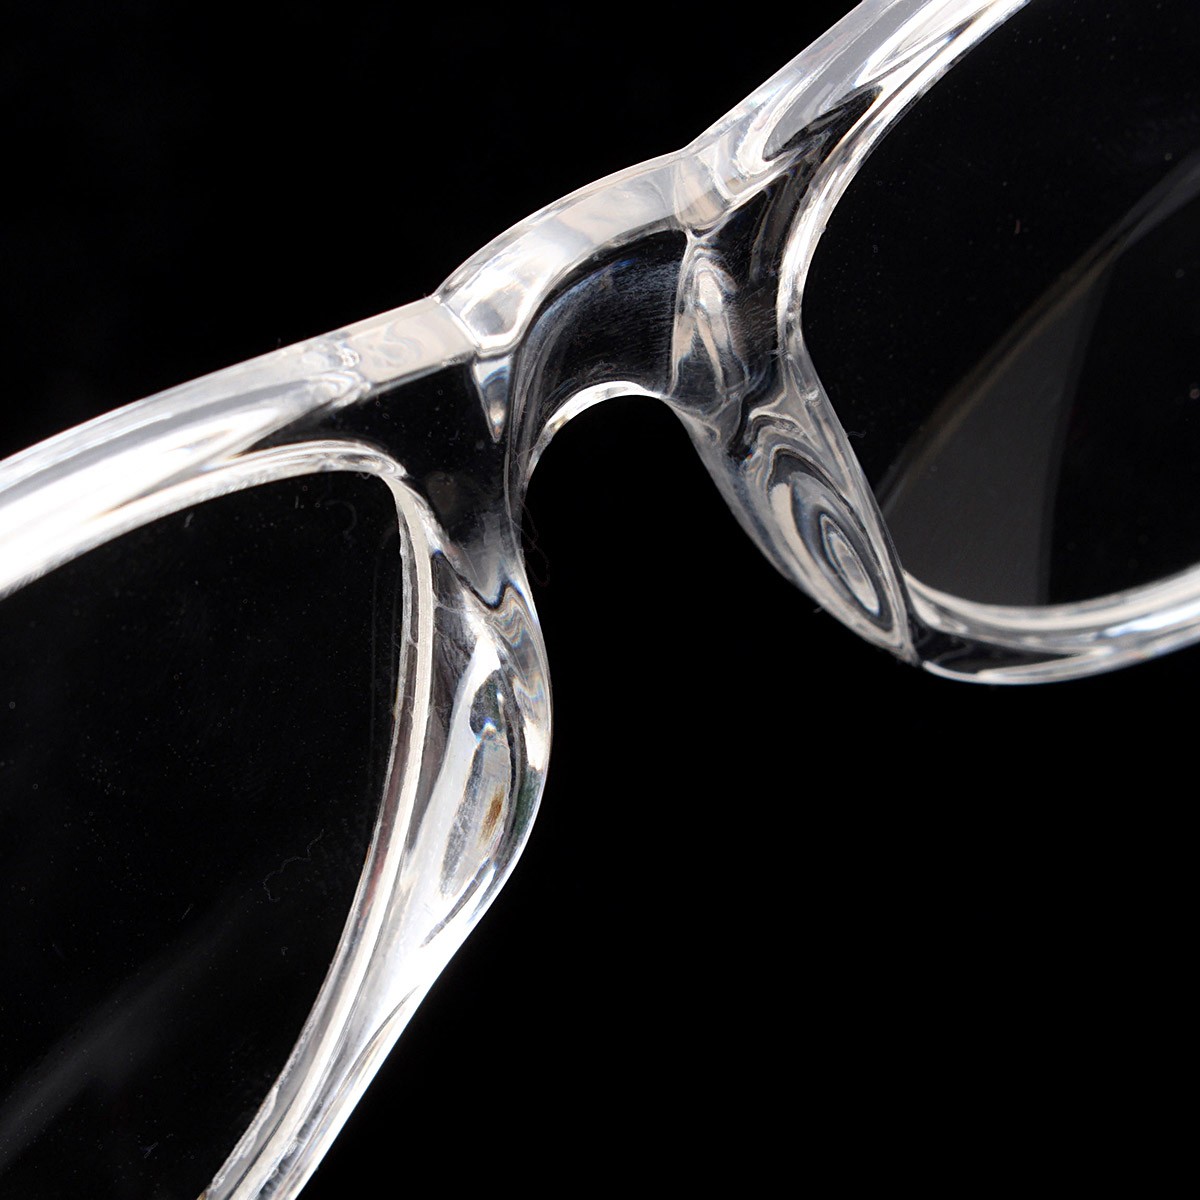 Unisex-Plastic-Transparent-Frame-Glasses-Retro-Plain-Lens-Eyeglasseess-1065770